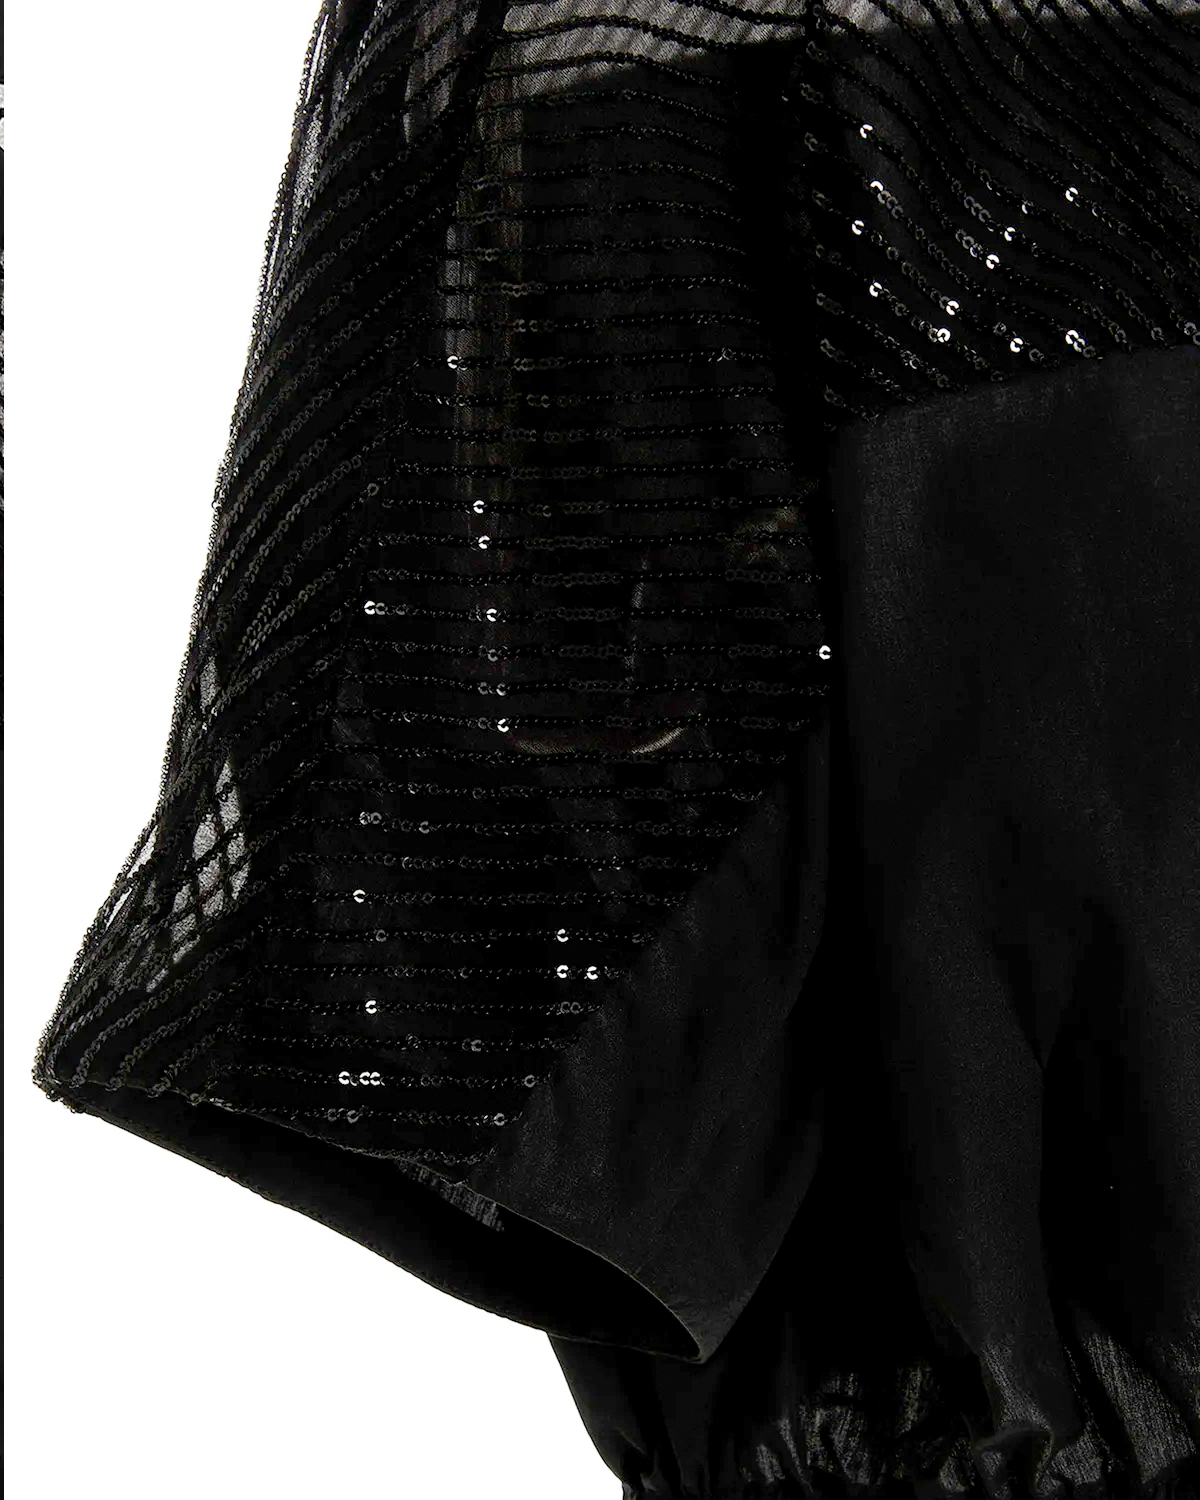 Black Sequin Embellished Crop Blouse